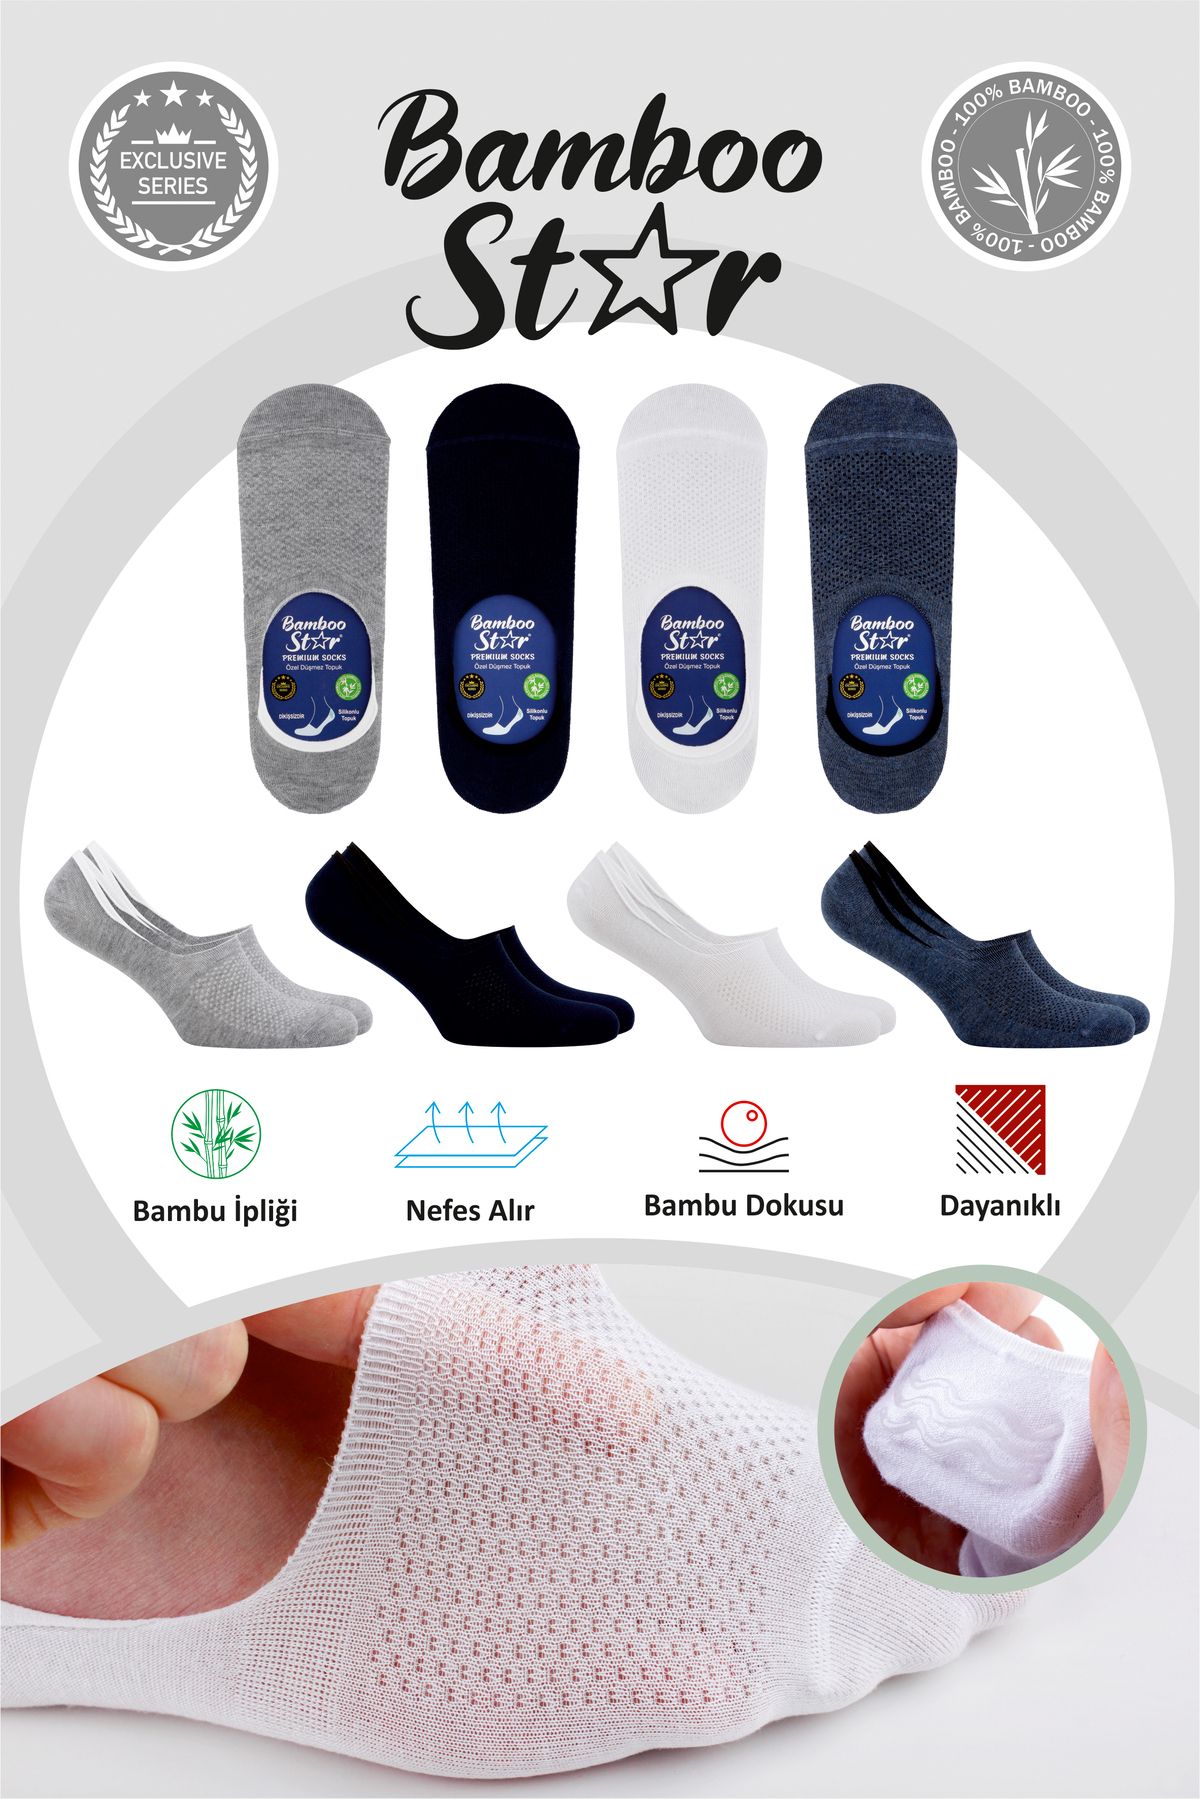 bamboo star Bambu Erkek Çorap Dikişsiz Görünmez Terletmez Fileli Kaydırmaz Topuk Silikonlu Premium 4lü Paket